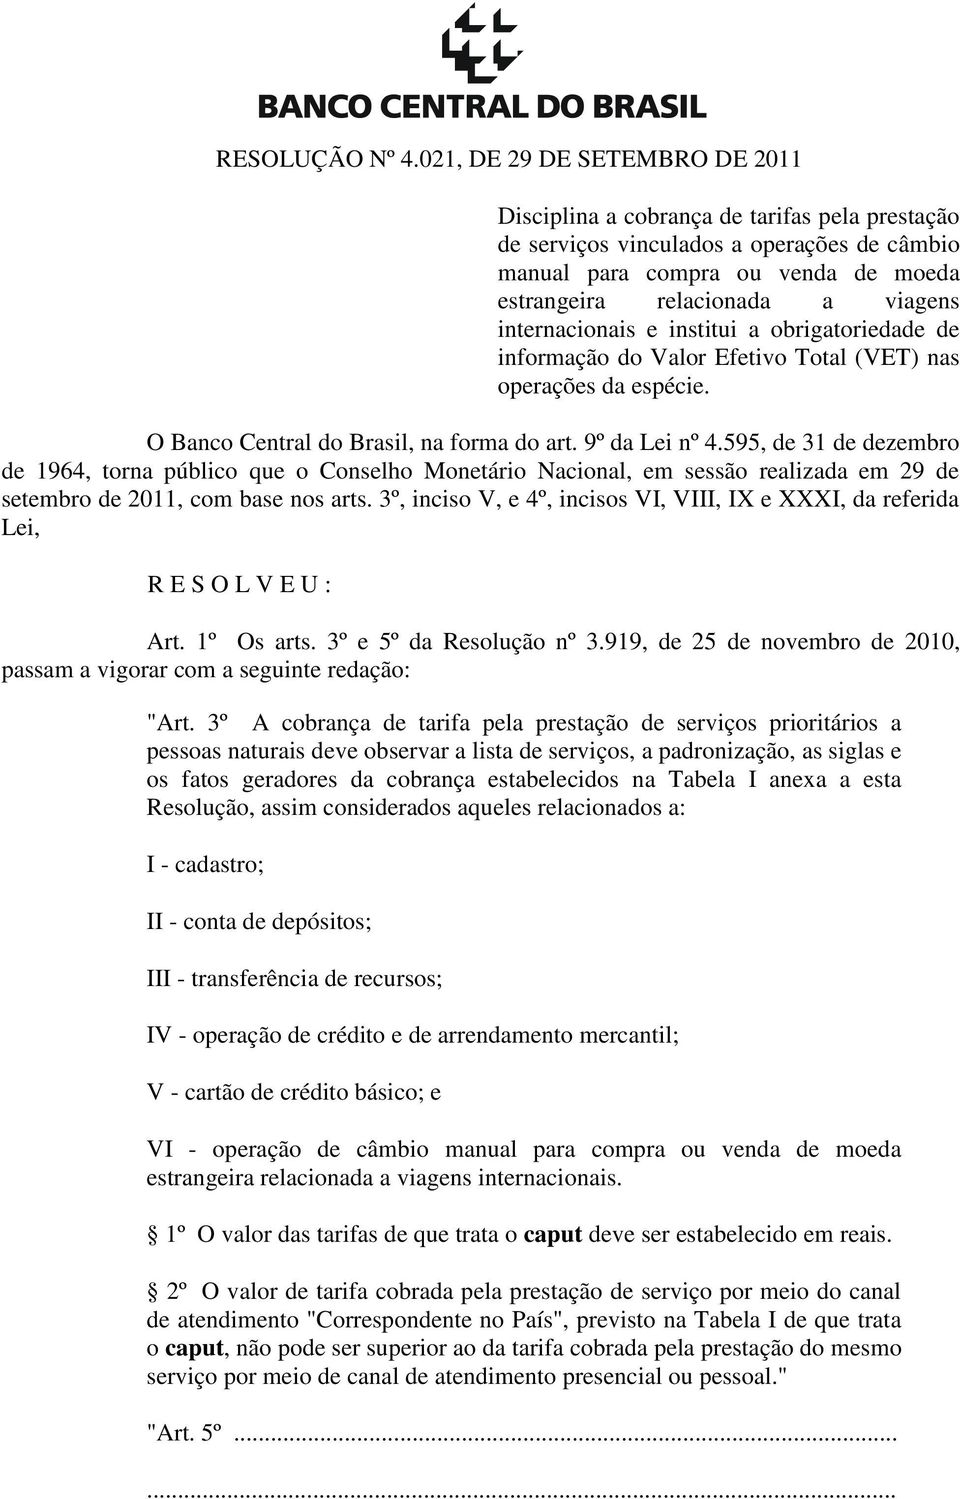 internacionais e institui a obrigatoriedade de informação do Valor Efetivo Total (VET) nas operações da espécie. O Banco Central do Brasil, na forma do art. 9º da Lei nº 4.